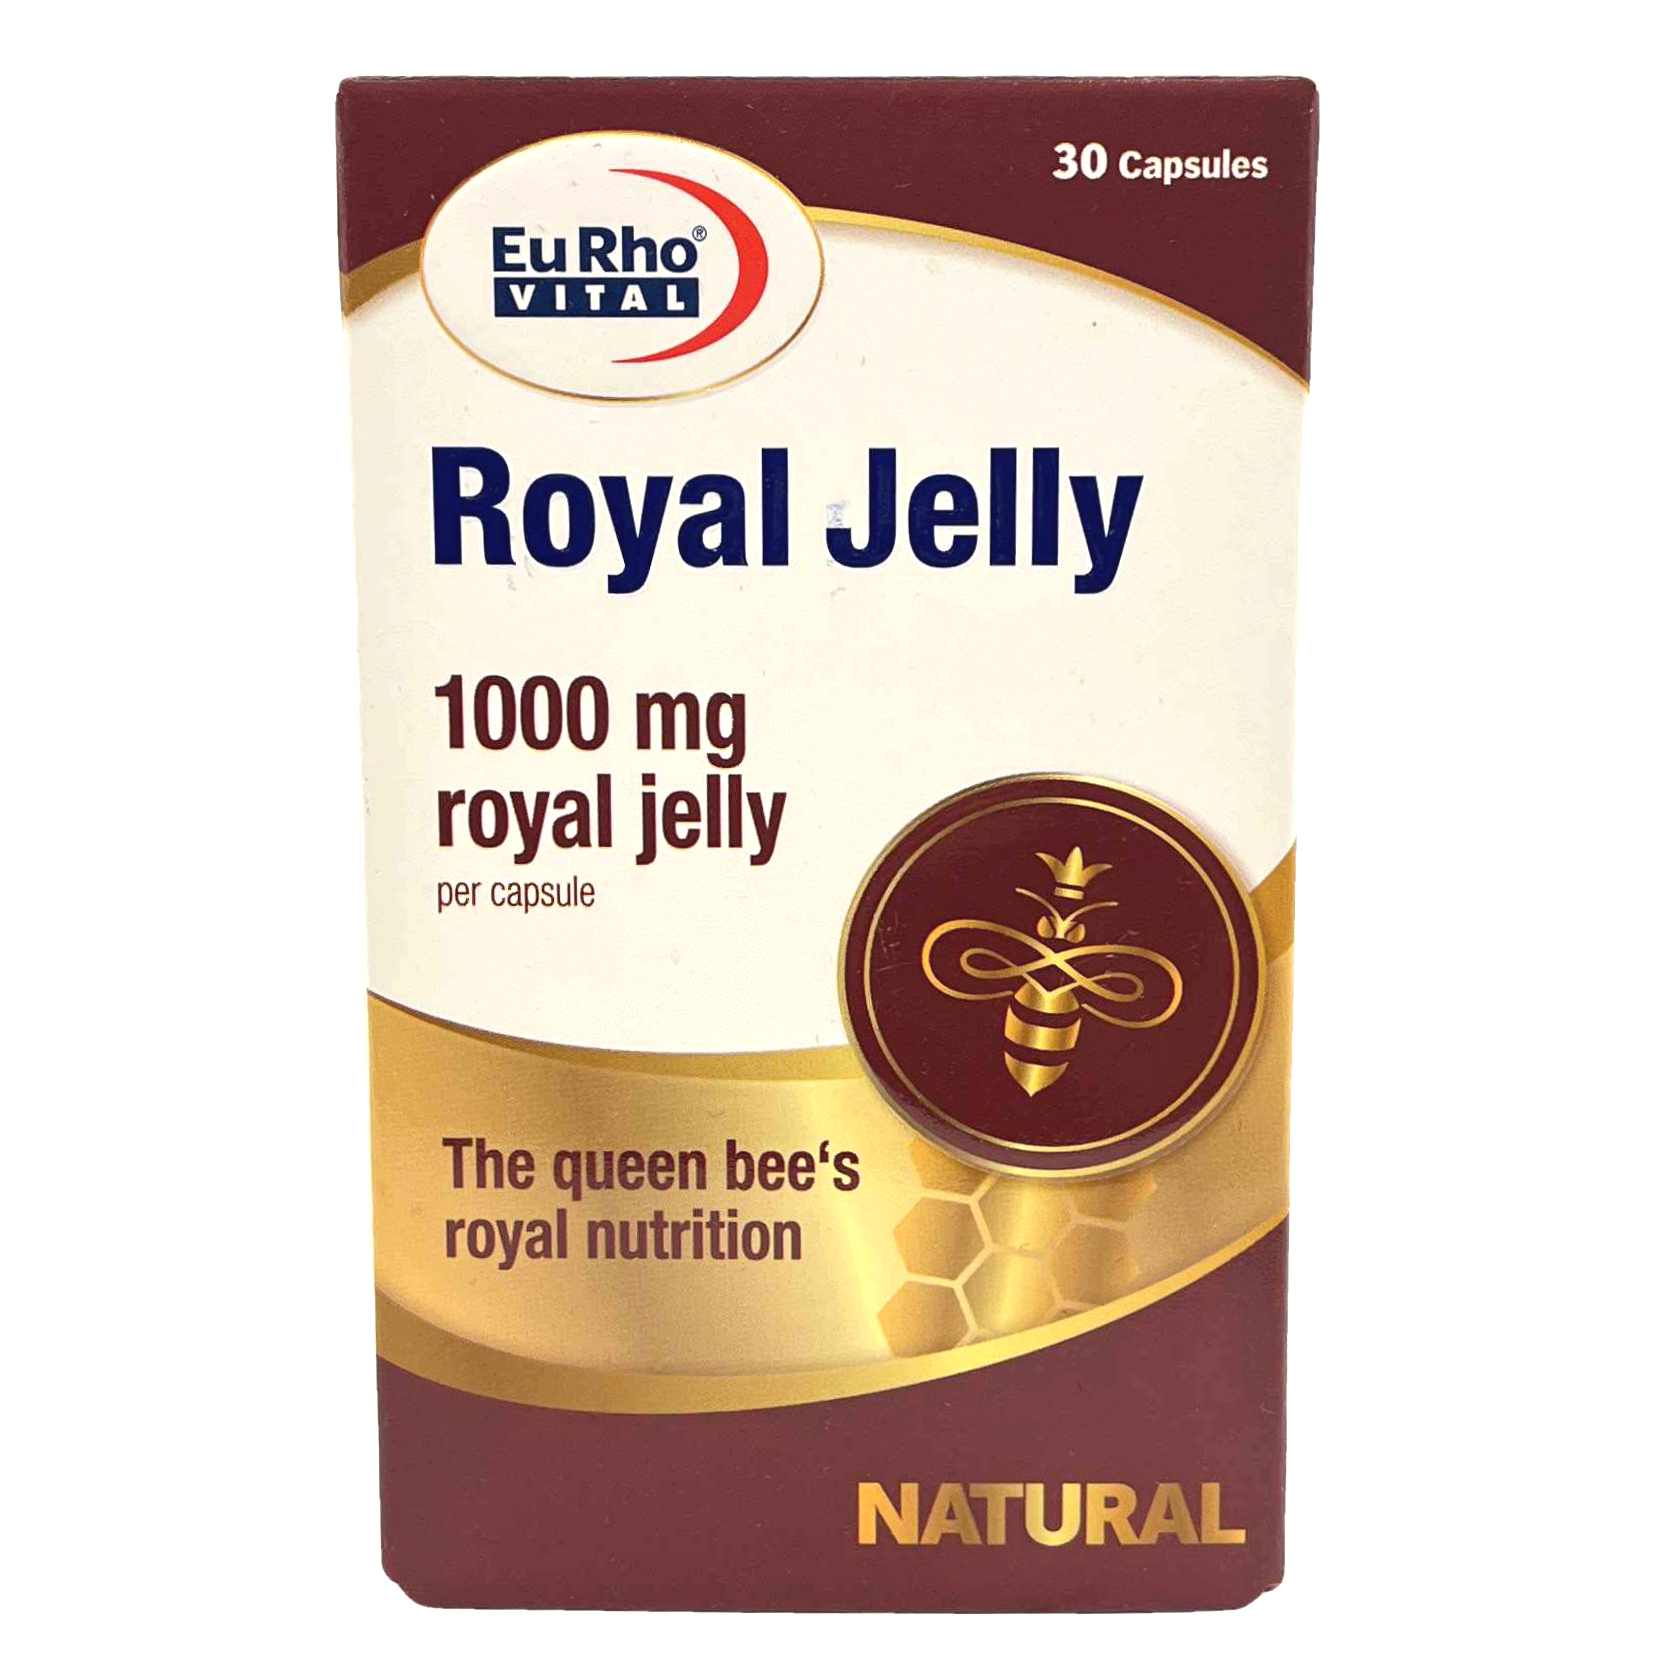 کپسول رویال ژلی یوروویتال EurhoVital Royal Jelly